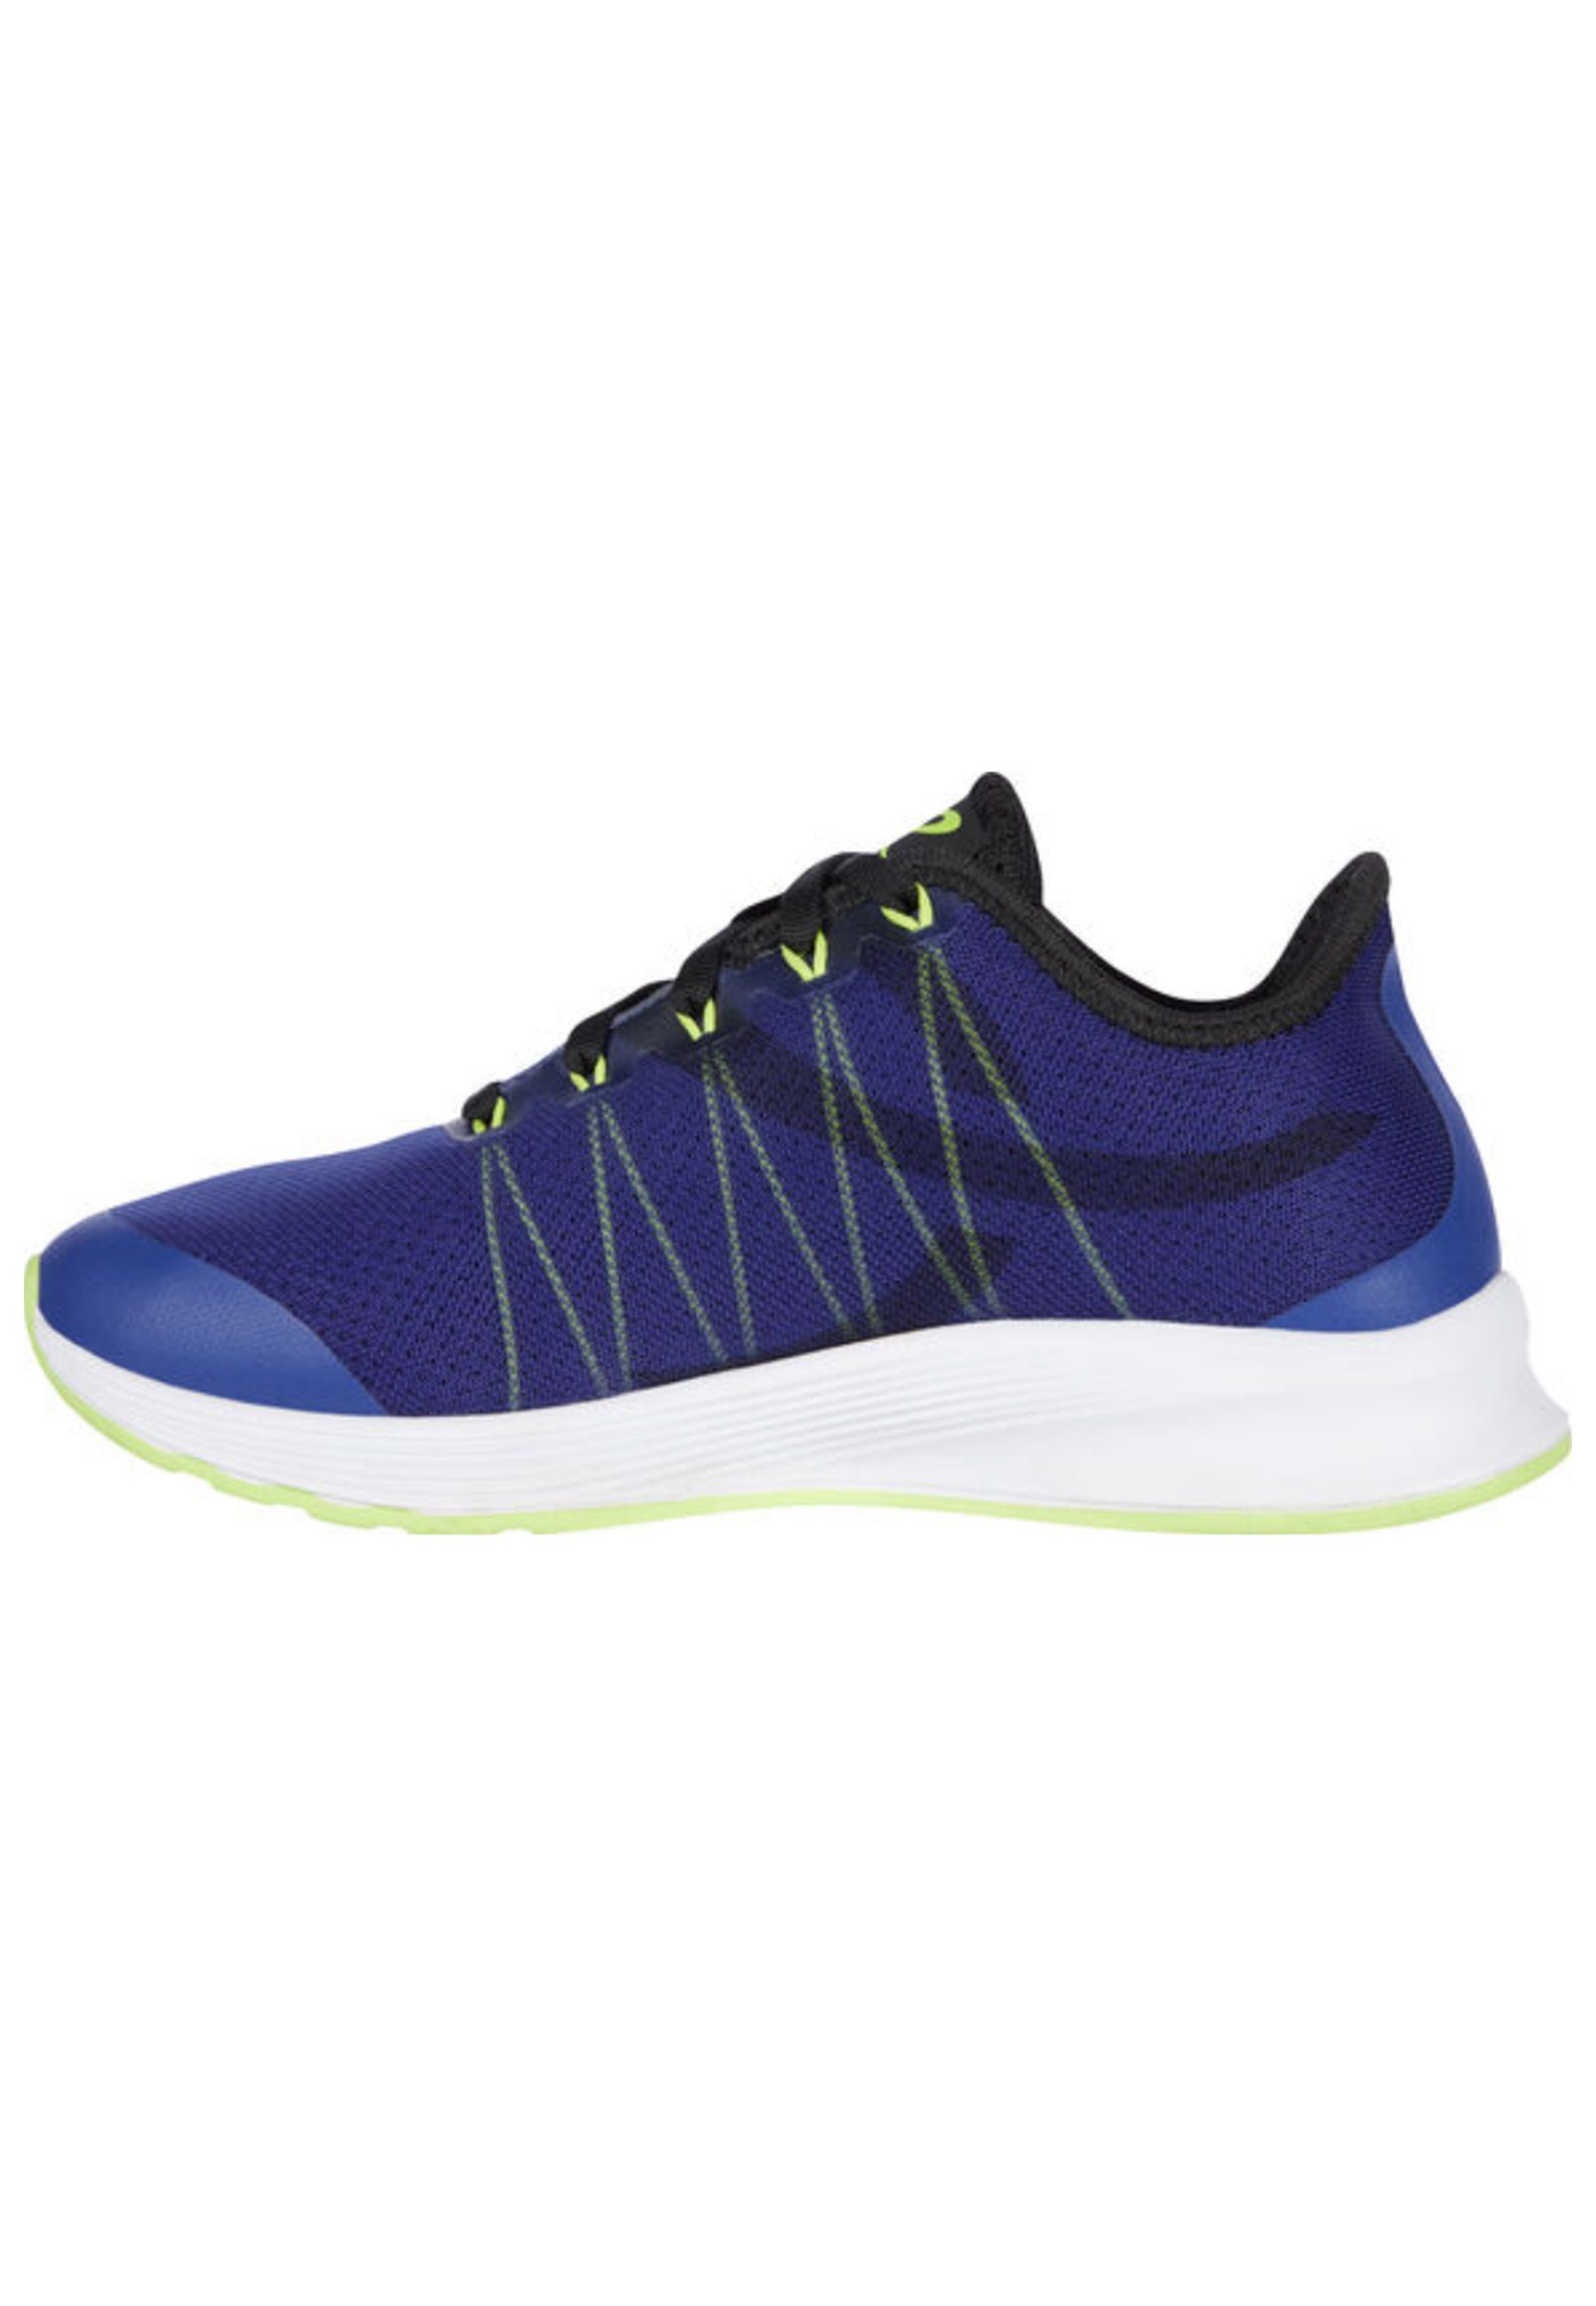 Energetics Oz 2.3 blau Sneaker